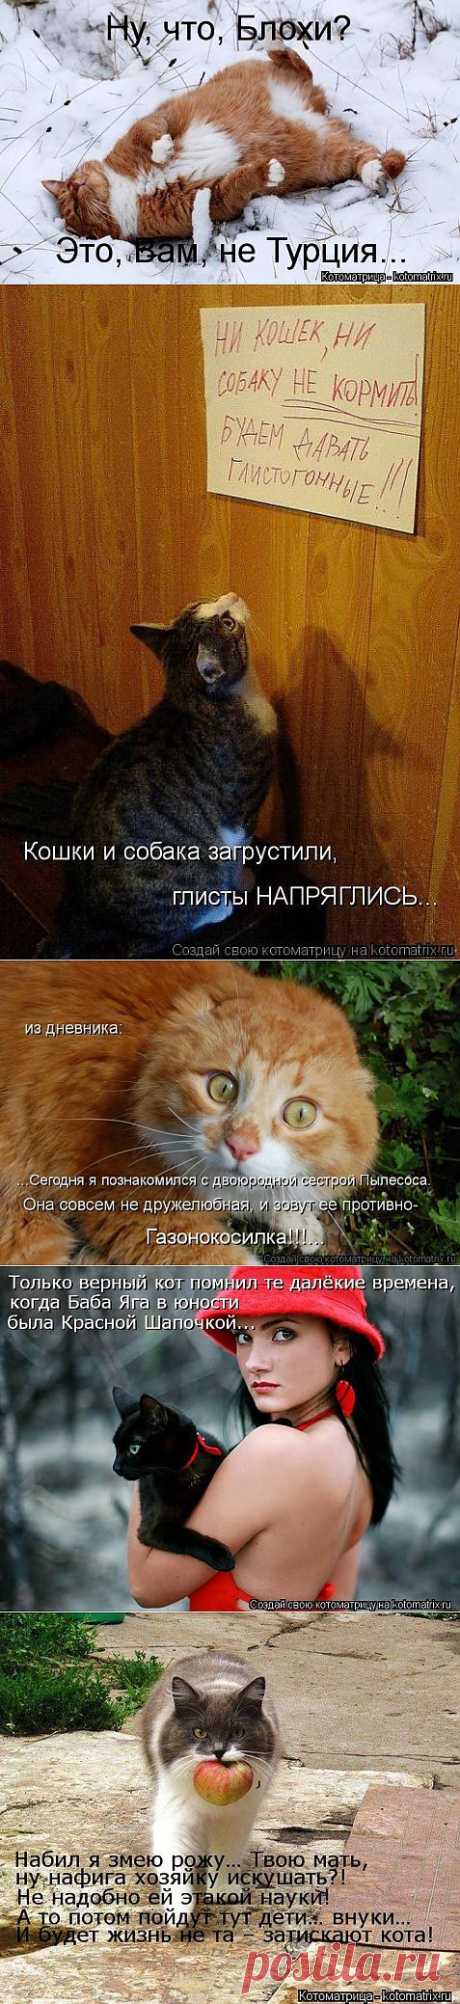 Без кота жизнь не та (42 фото) - ЛоЛс.ру - Позитивный такой смешарик! :-))